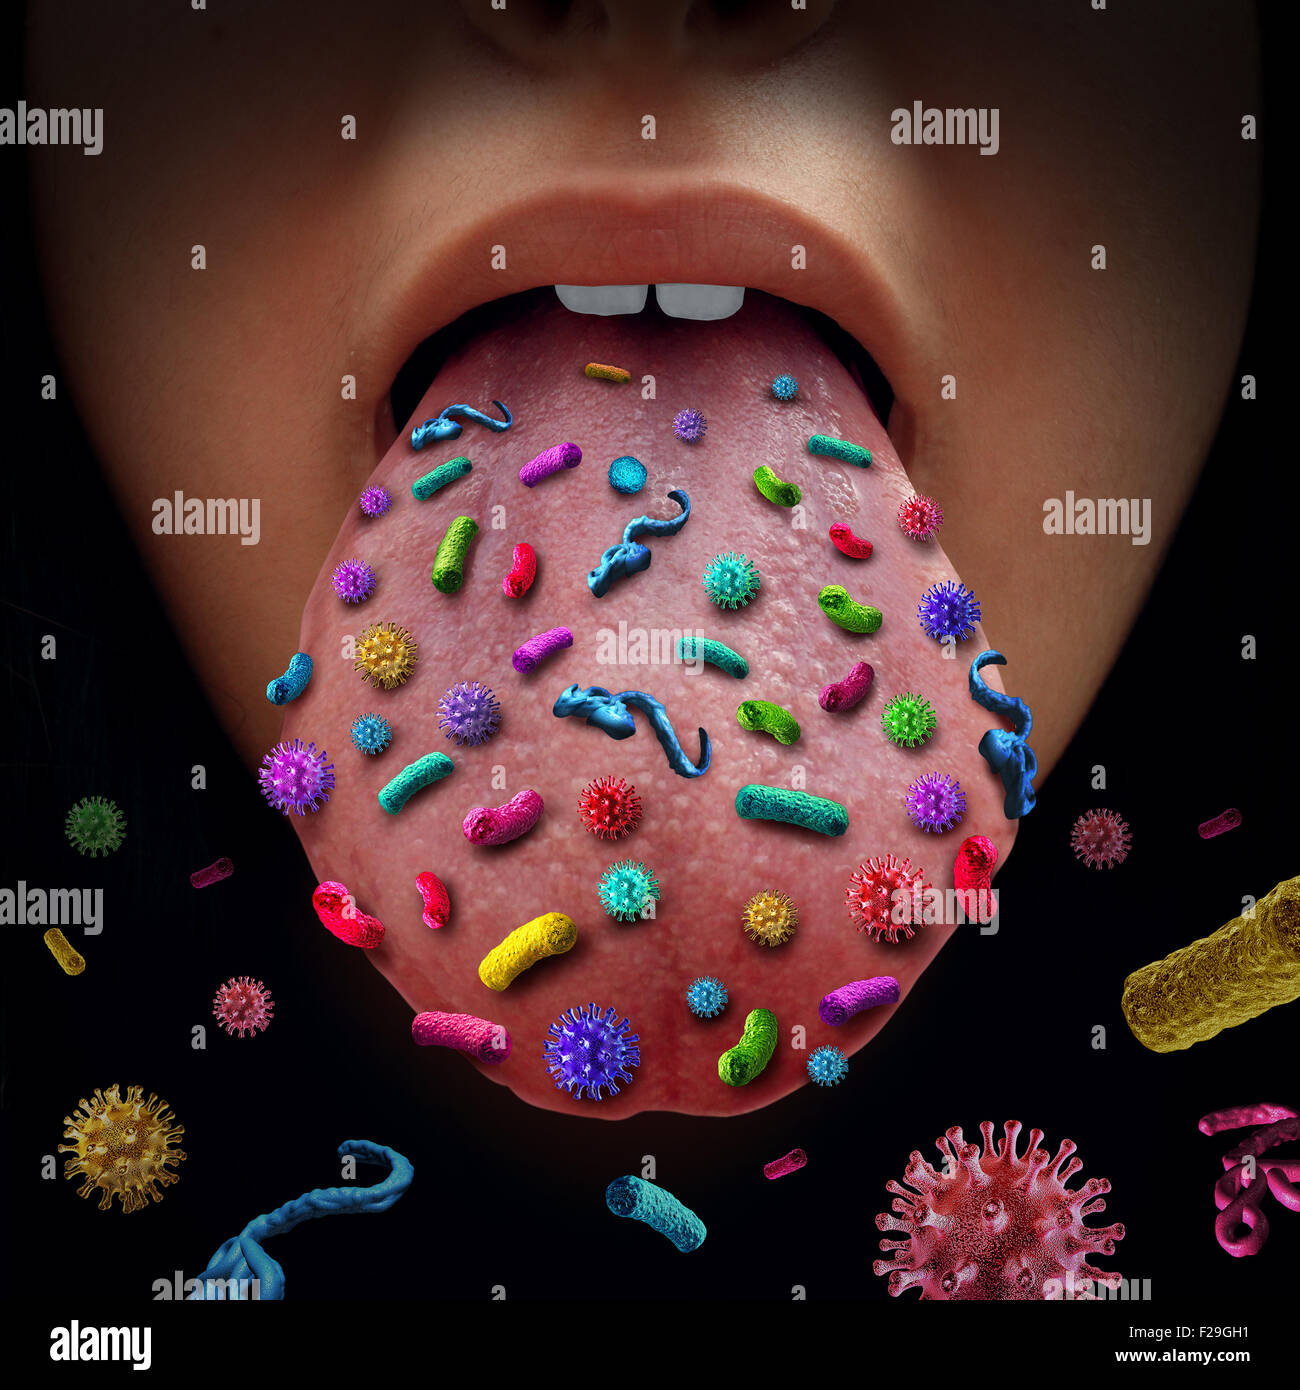 Los gérmenes de la boca y enfermedad contagiosa que transmite una infección con un virus abra la boca humana peligrosa propagación de gérmenes infecciosos Foto de stock